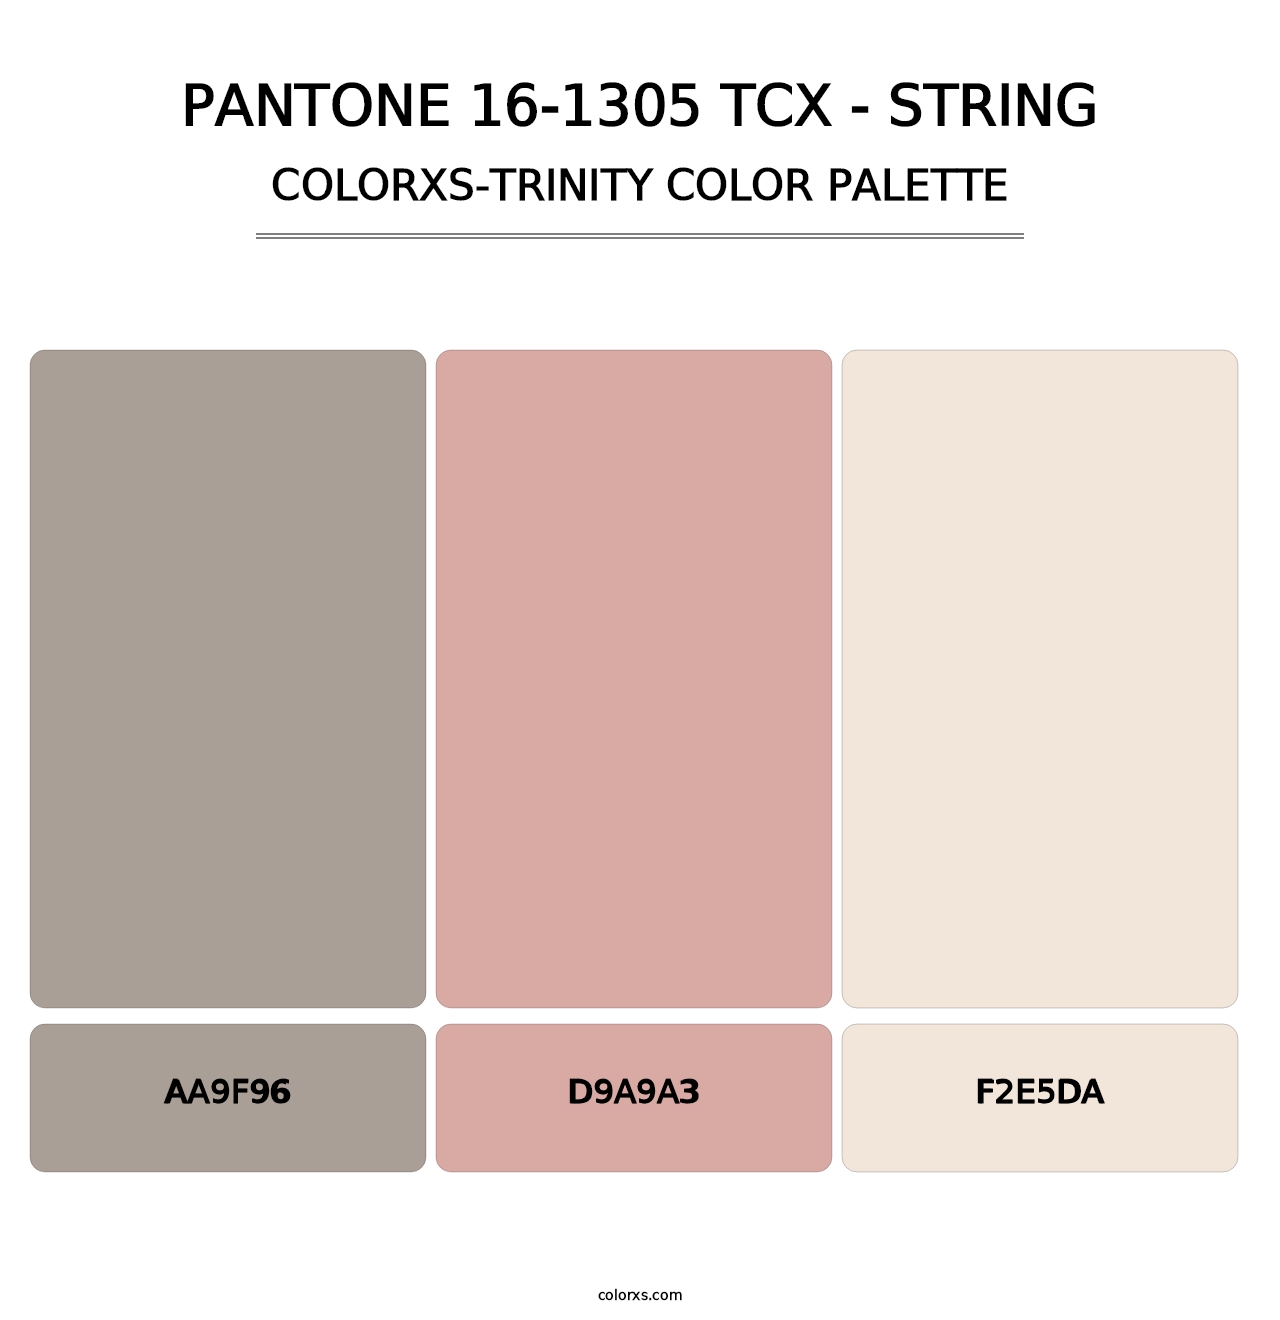 PANTONE 16-1305 TCX - String - Colorxs Trinity Palette